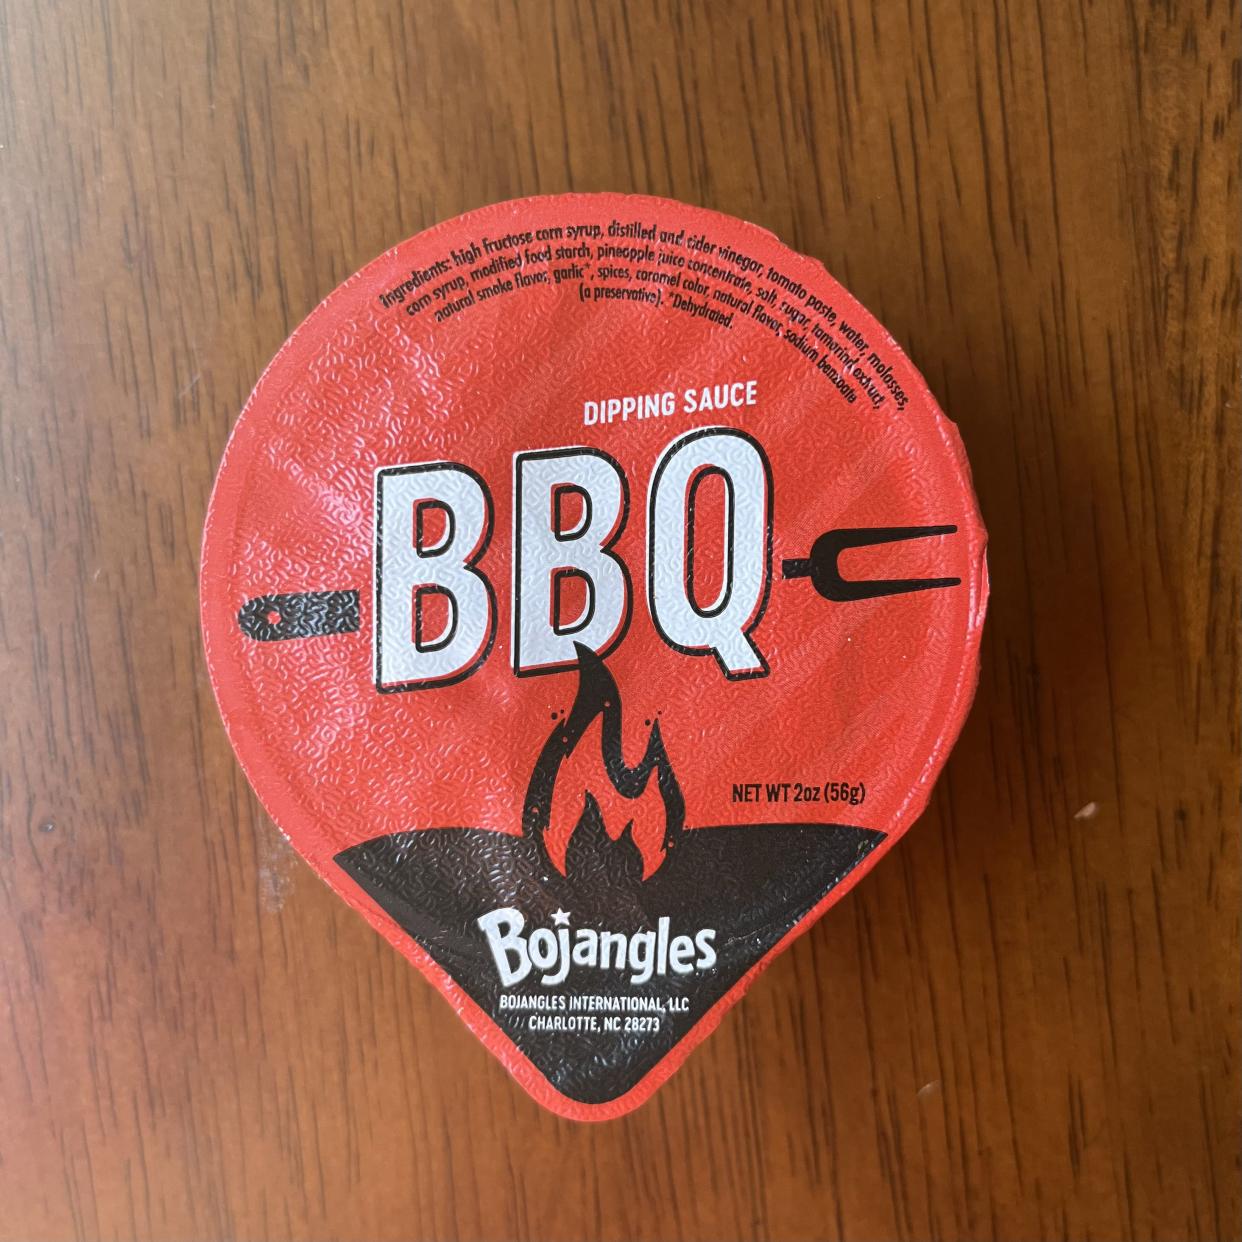 Bojangles BBQ sauce